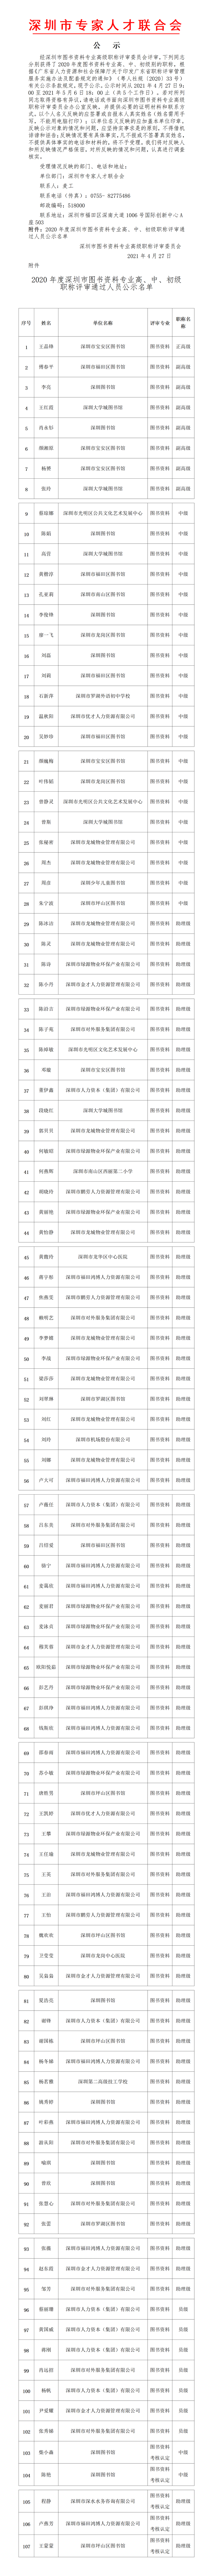 2020年度深圳市图书资料专业高级职称评审委员会通过人员公示